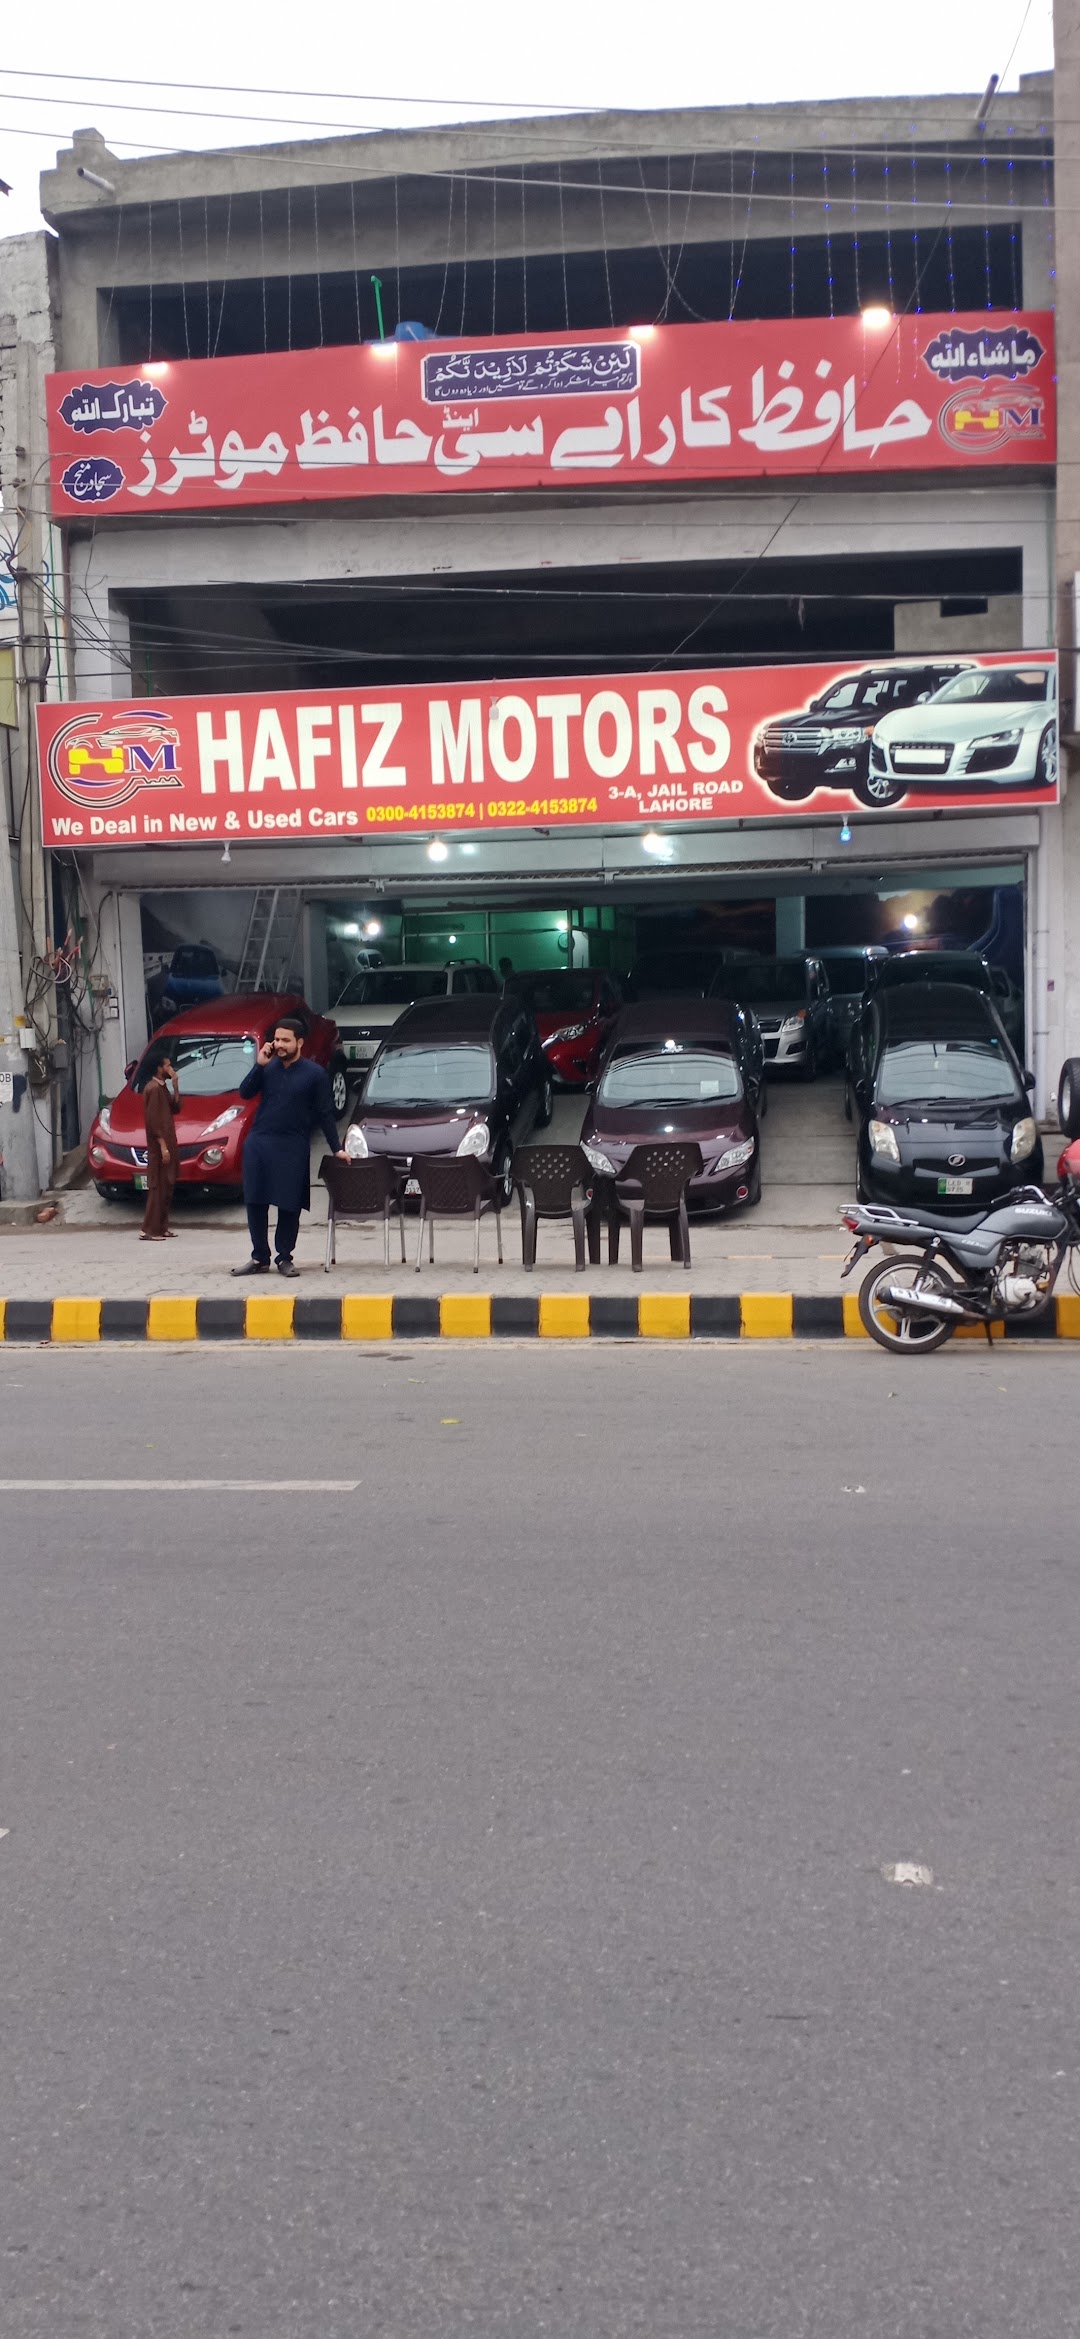 Hafiz Motors